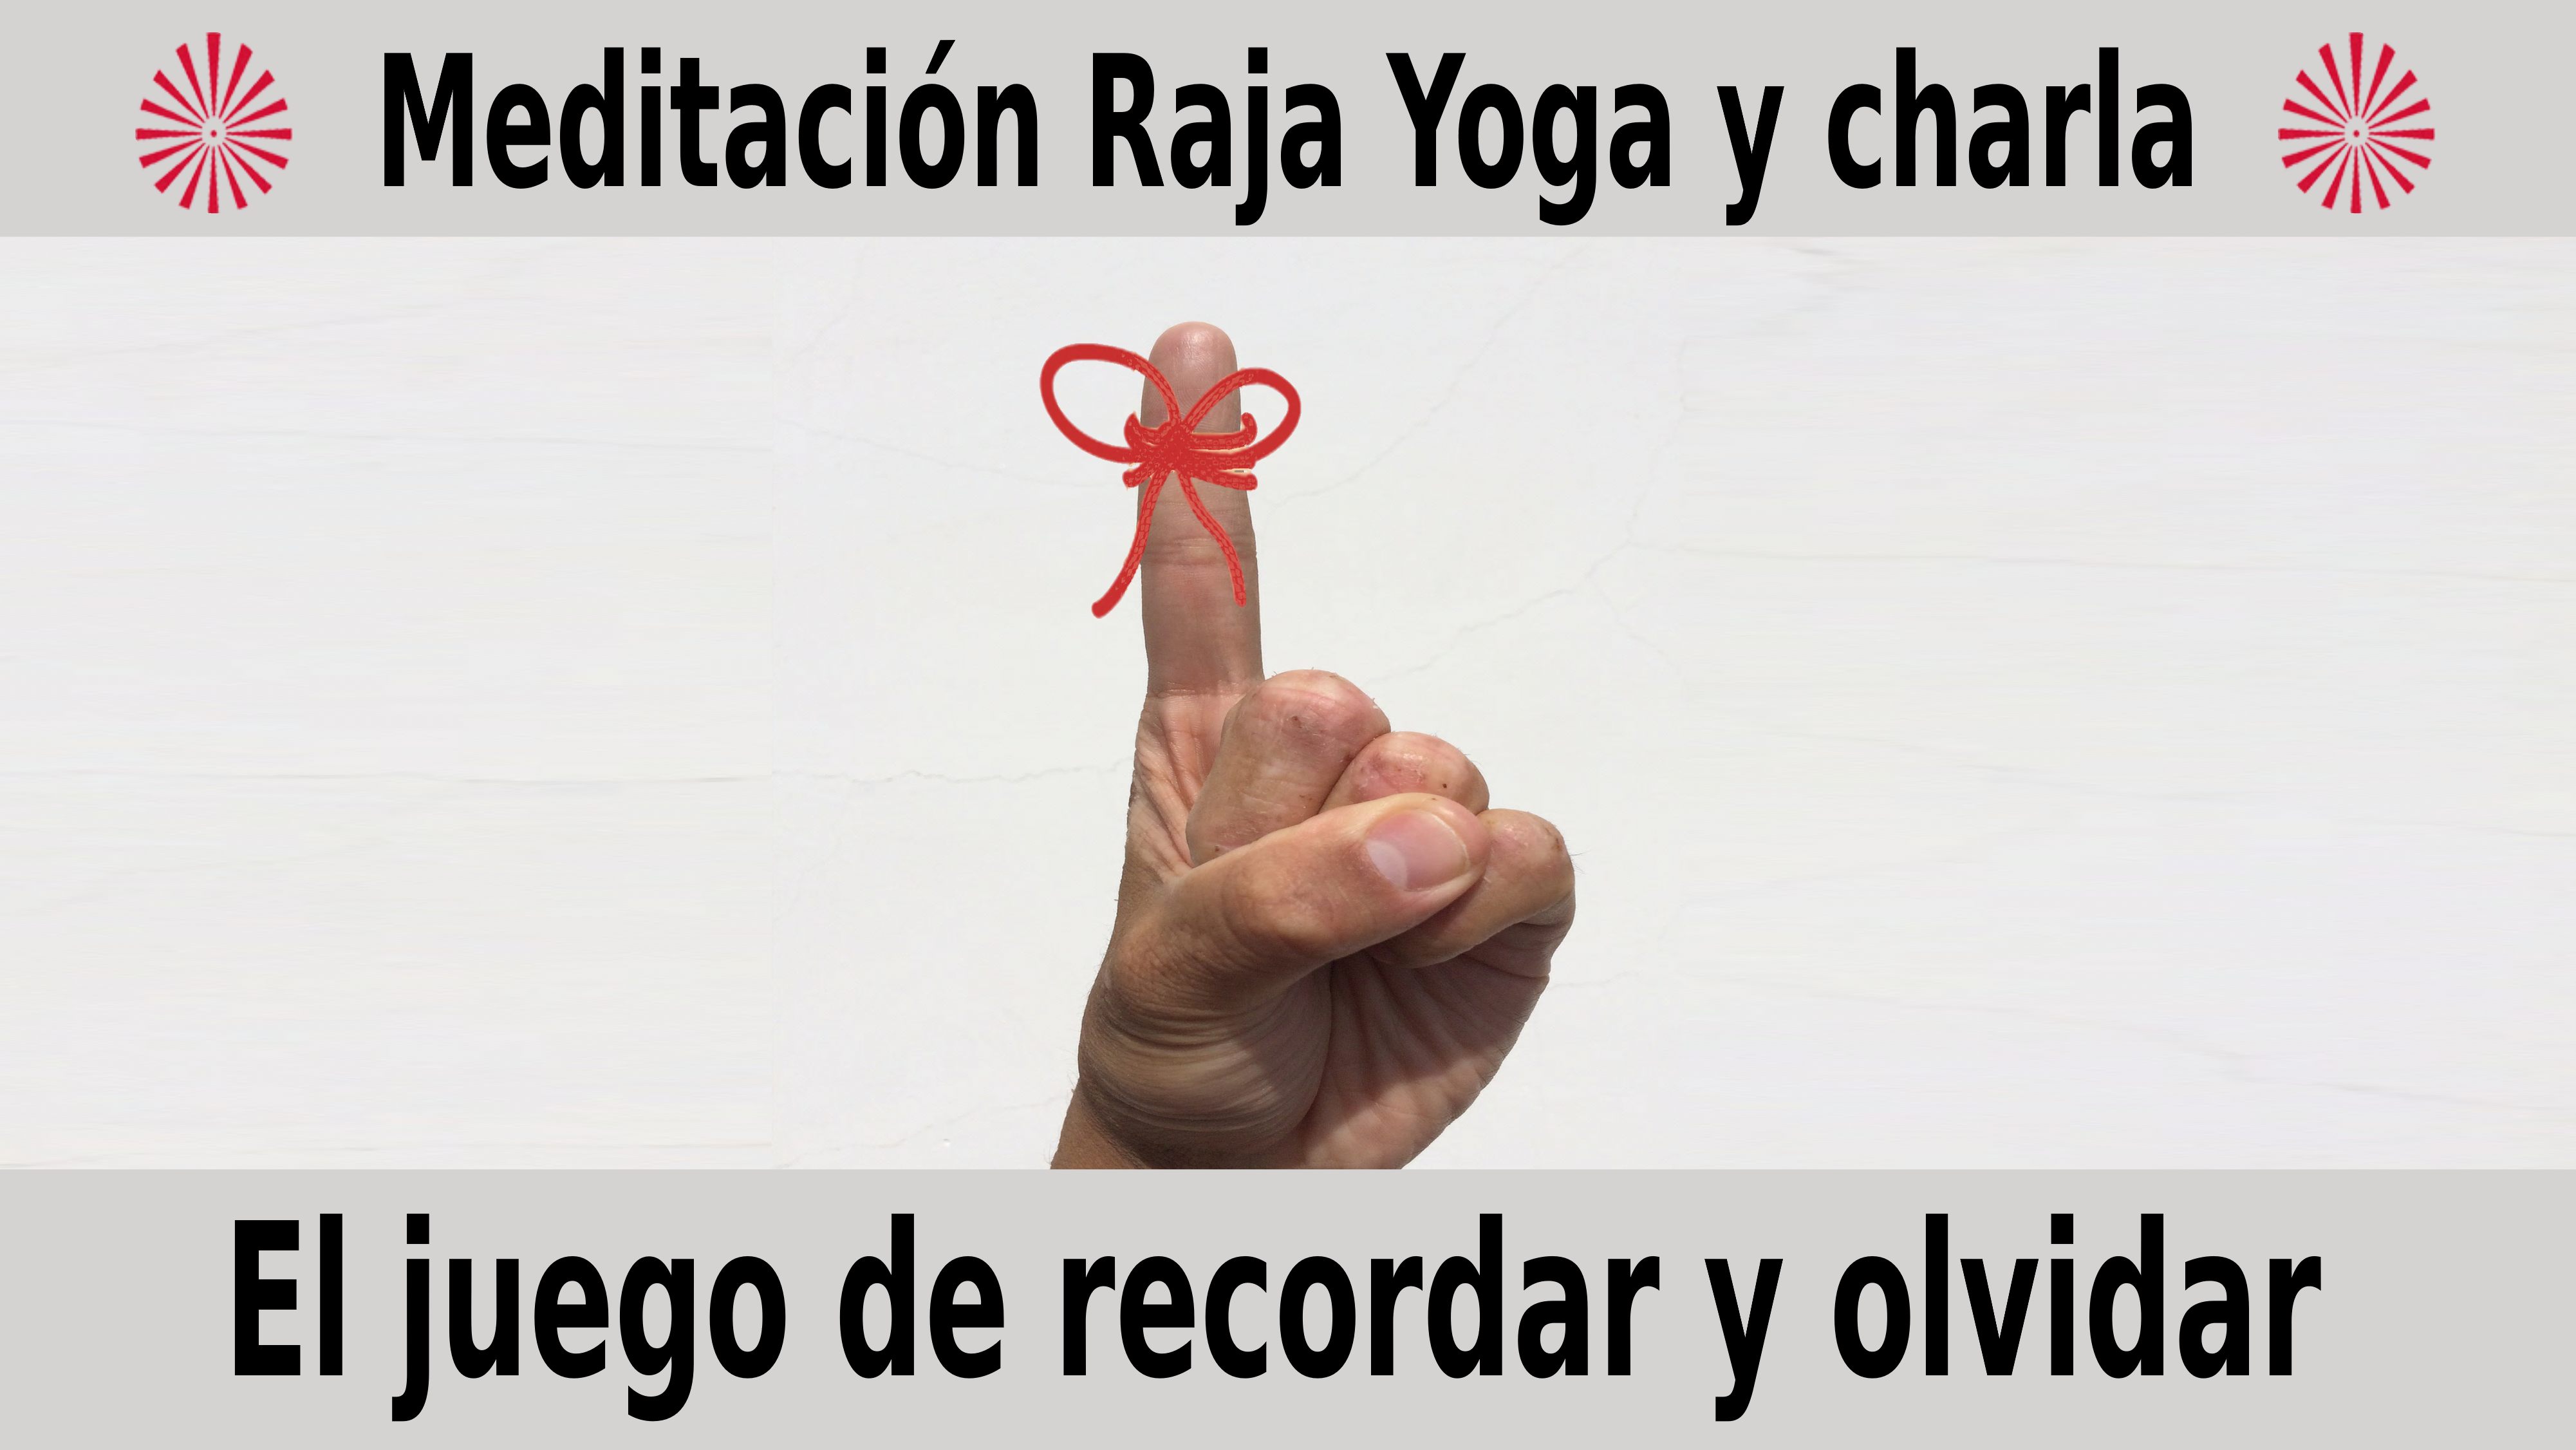 Meditación Raja Yoga y charla:  El juego de recordar y olvidar (1 Diciembre 2020) On-line desde Madrid